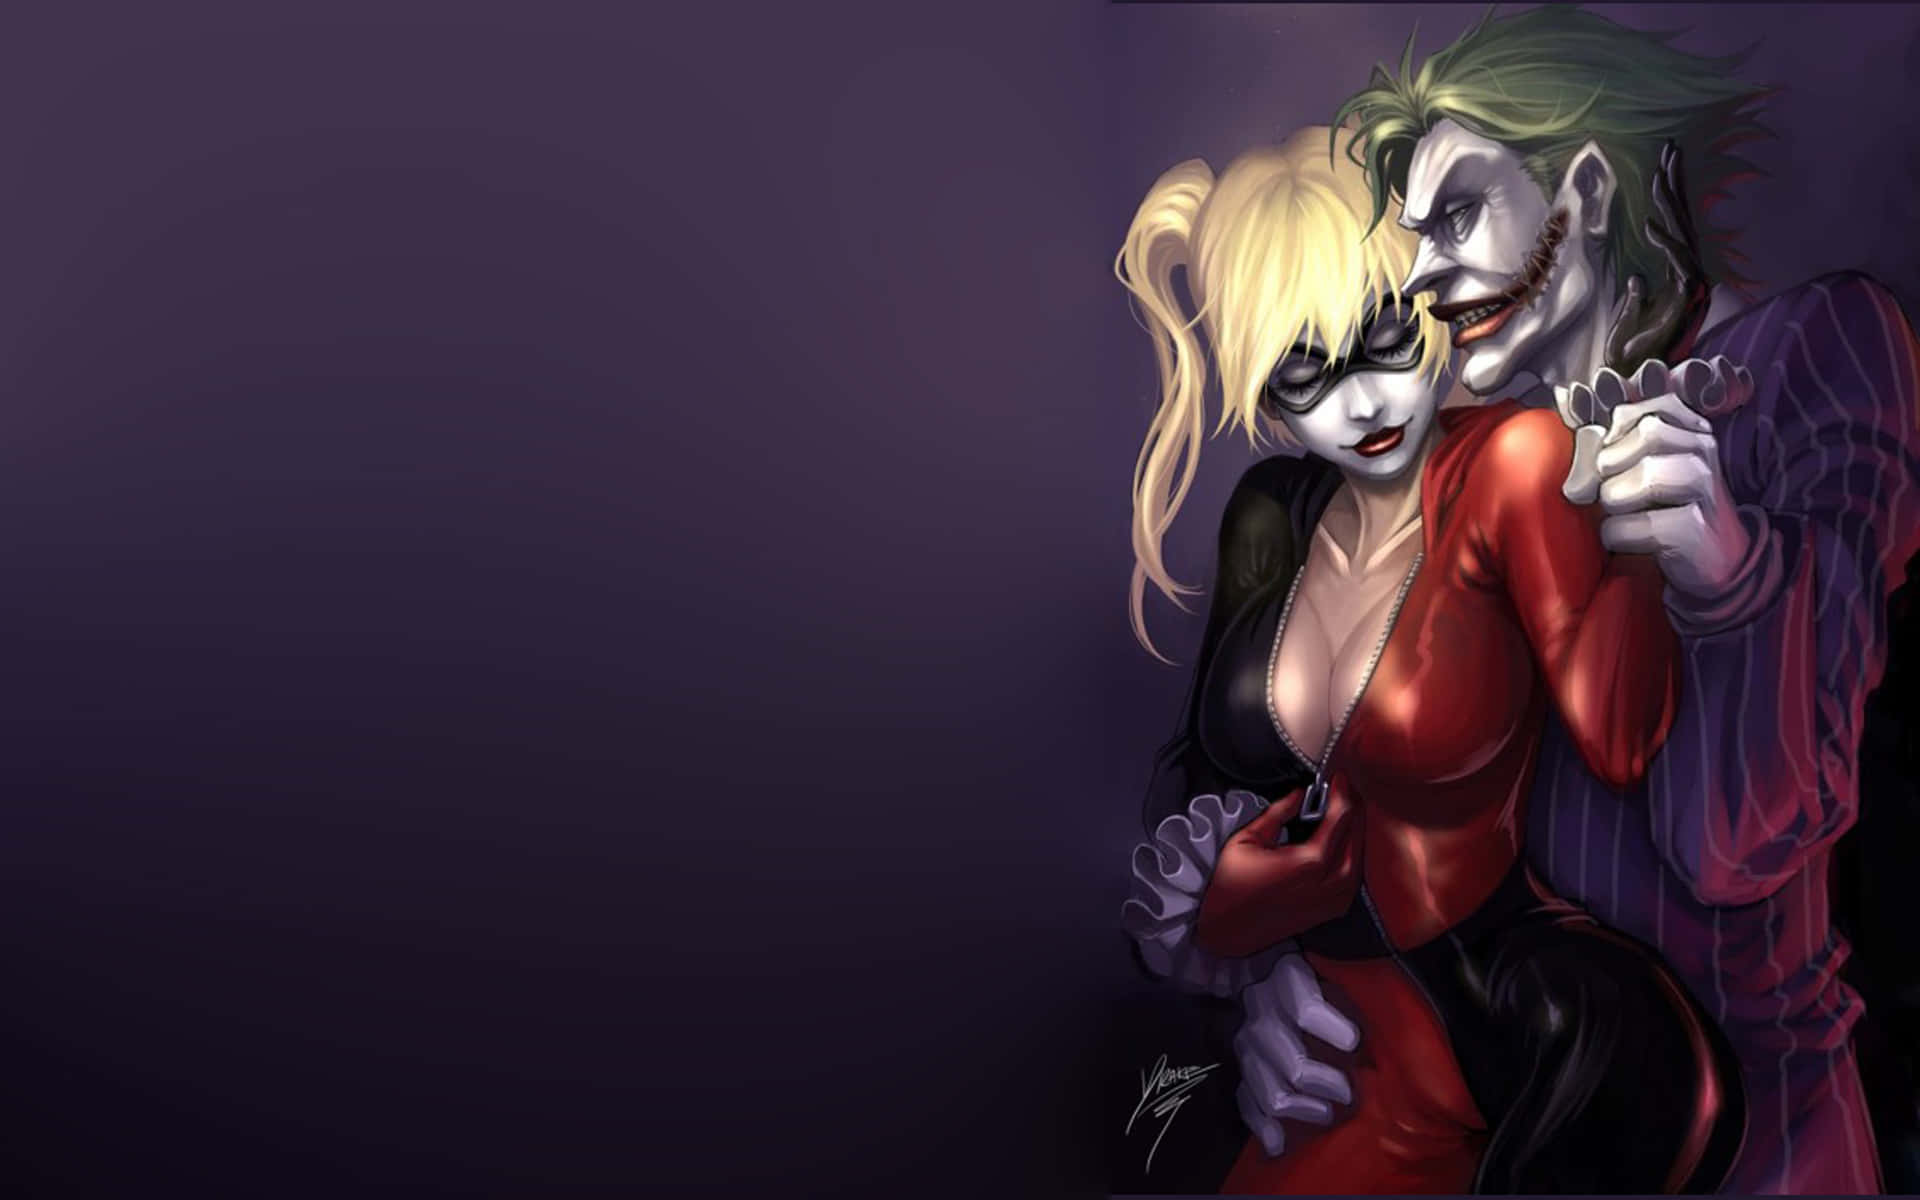 Kärleksbandetmellan Joker Och Harley Quinn I Suicide Squad. Wallpaper